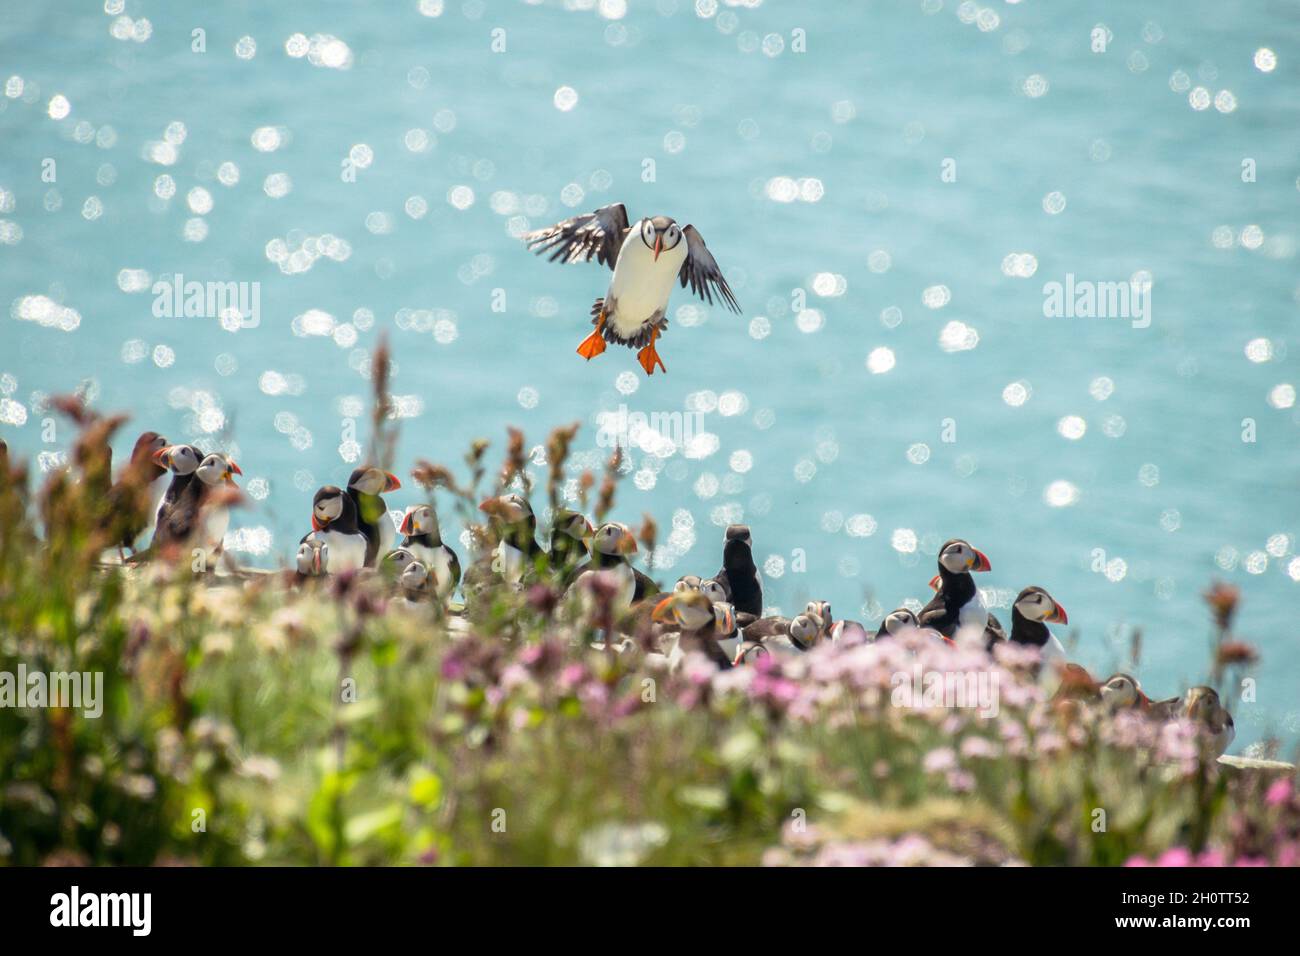 Il puffin arriva a atterrare su una cima di una scogliera ricoperta di luccicanti scogliere con più puffin contro un oceano blu scintillante Foto Stock